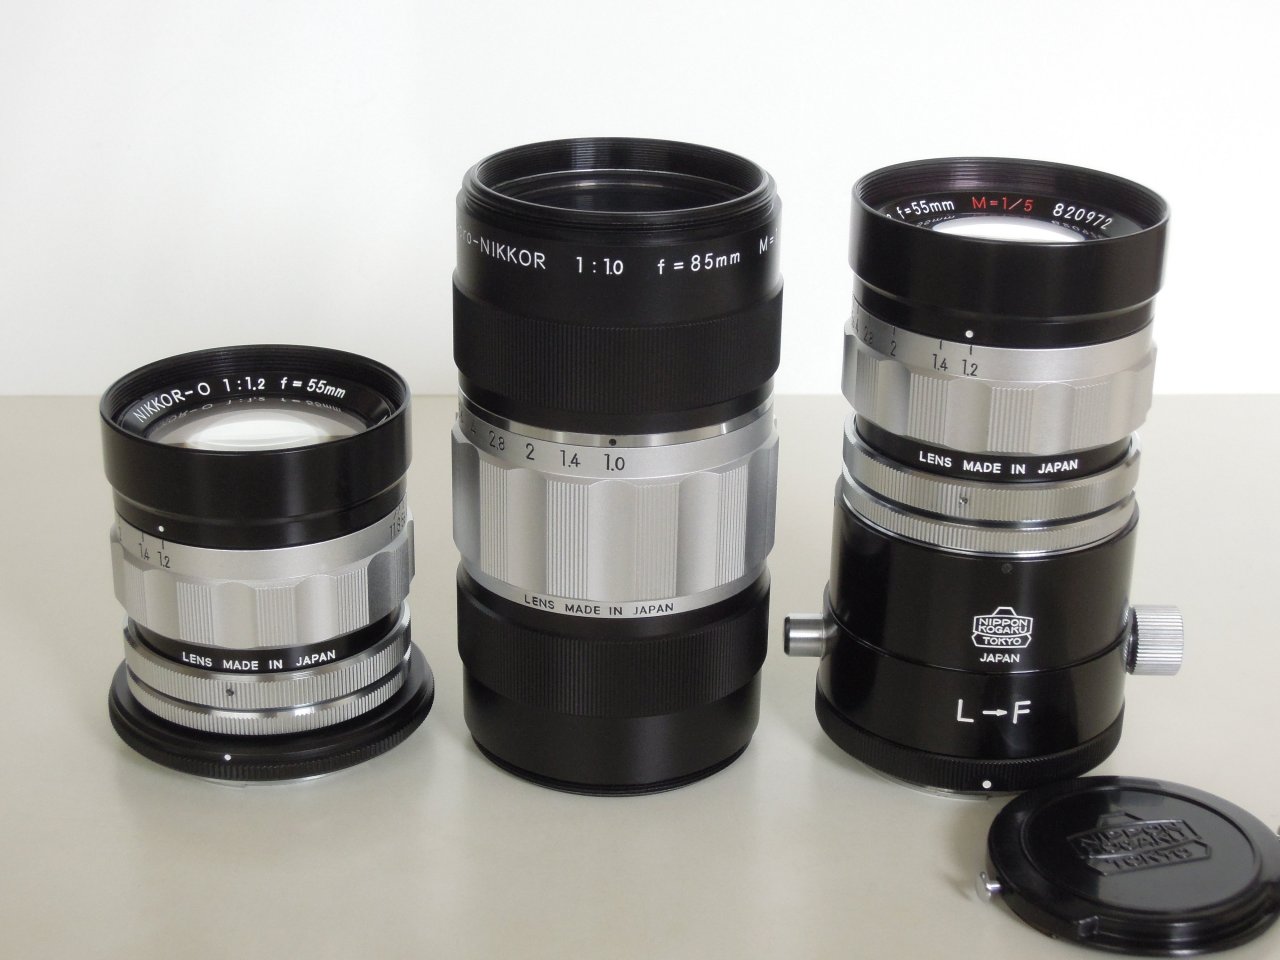 Super Special REPRO Nikkor Lens and Special CRT Nikkor Lens